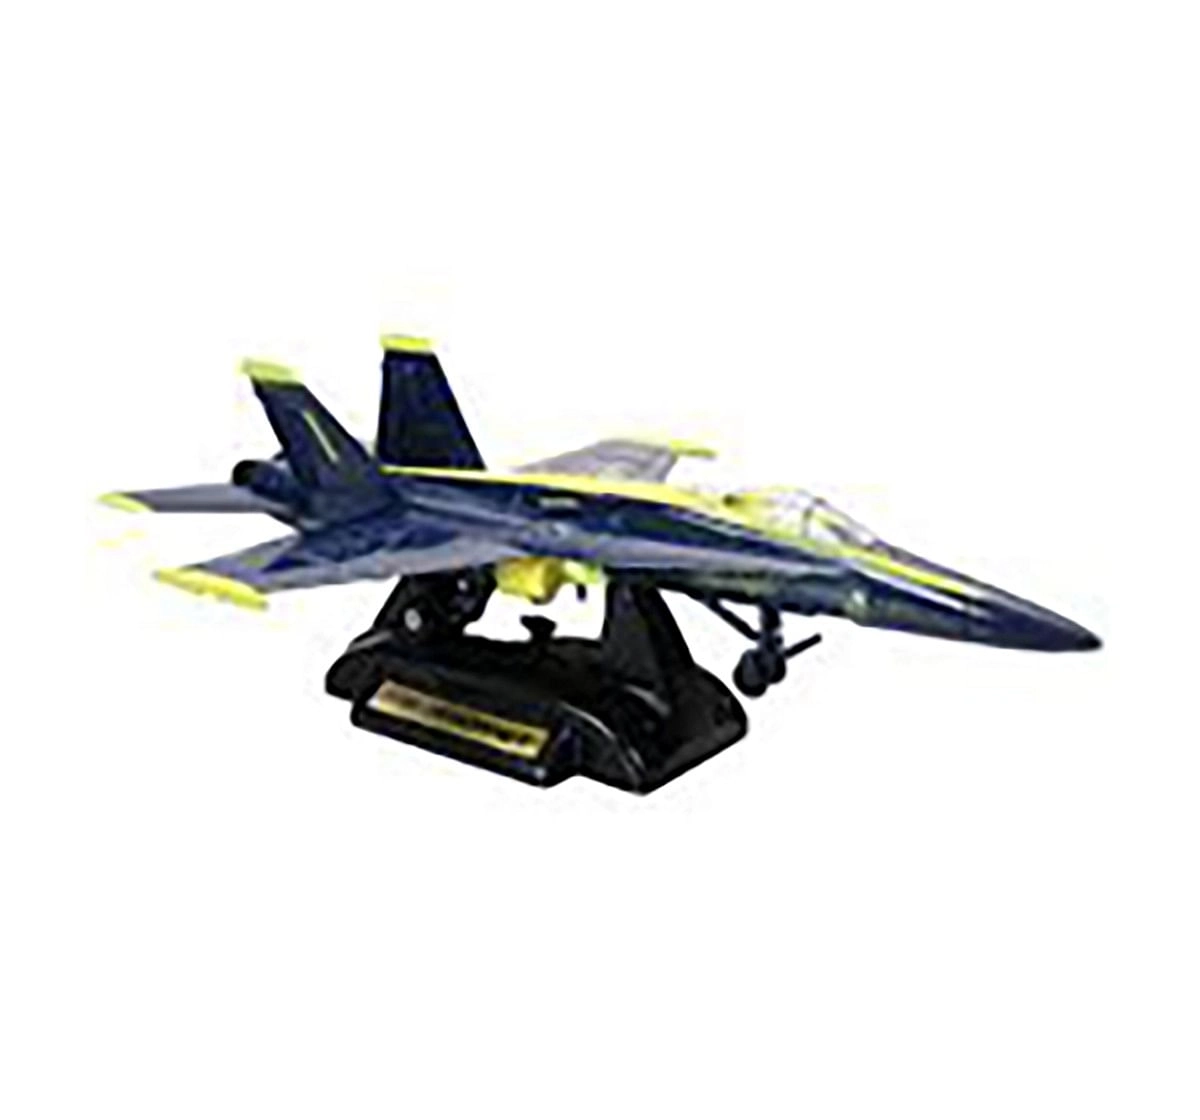 Motormax Die Cast Metal And Plastic Sky Wings- Blue Vehicles for Kids age 3Y+ (Blue)